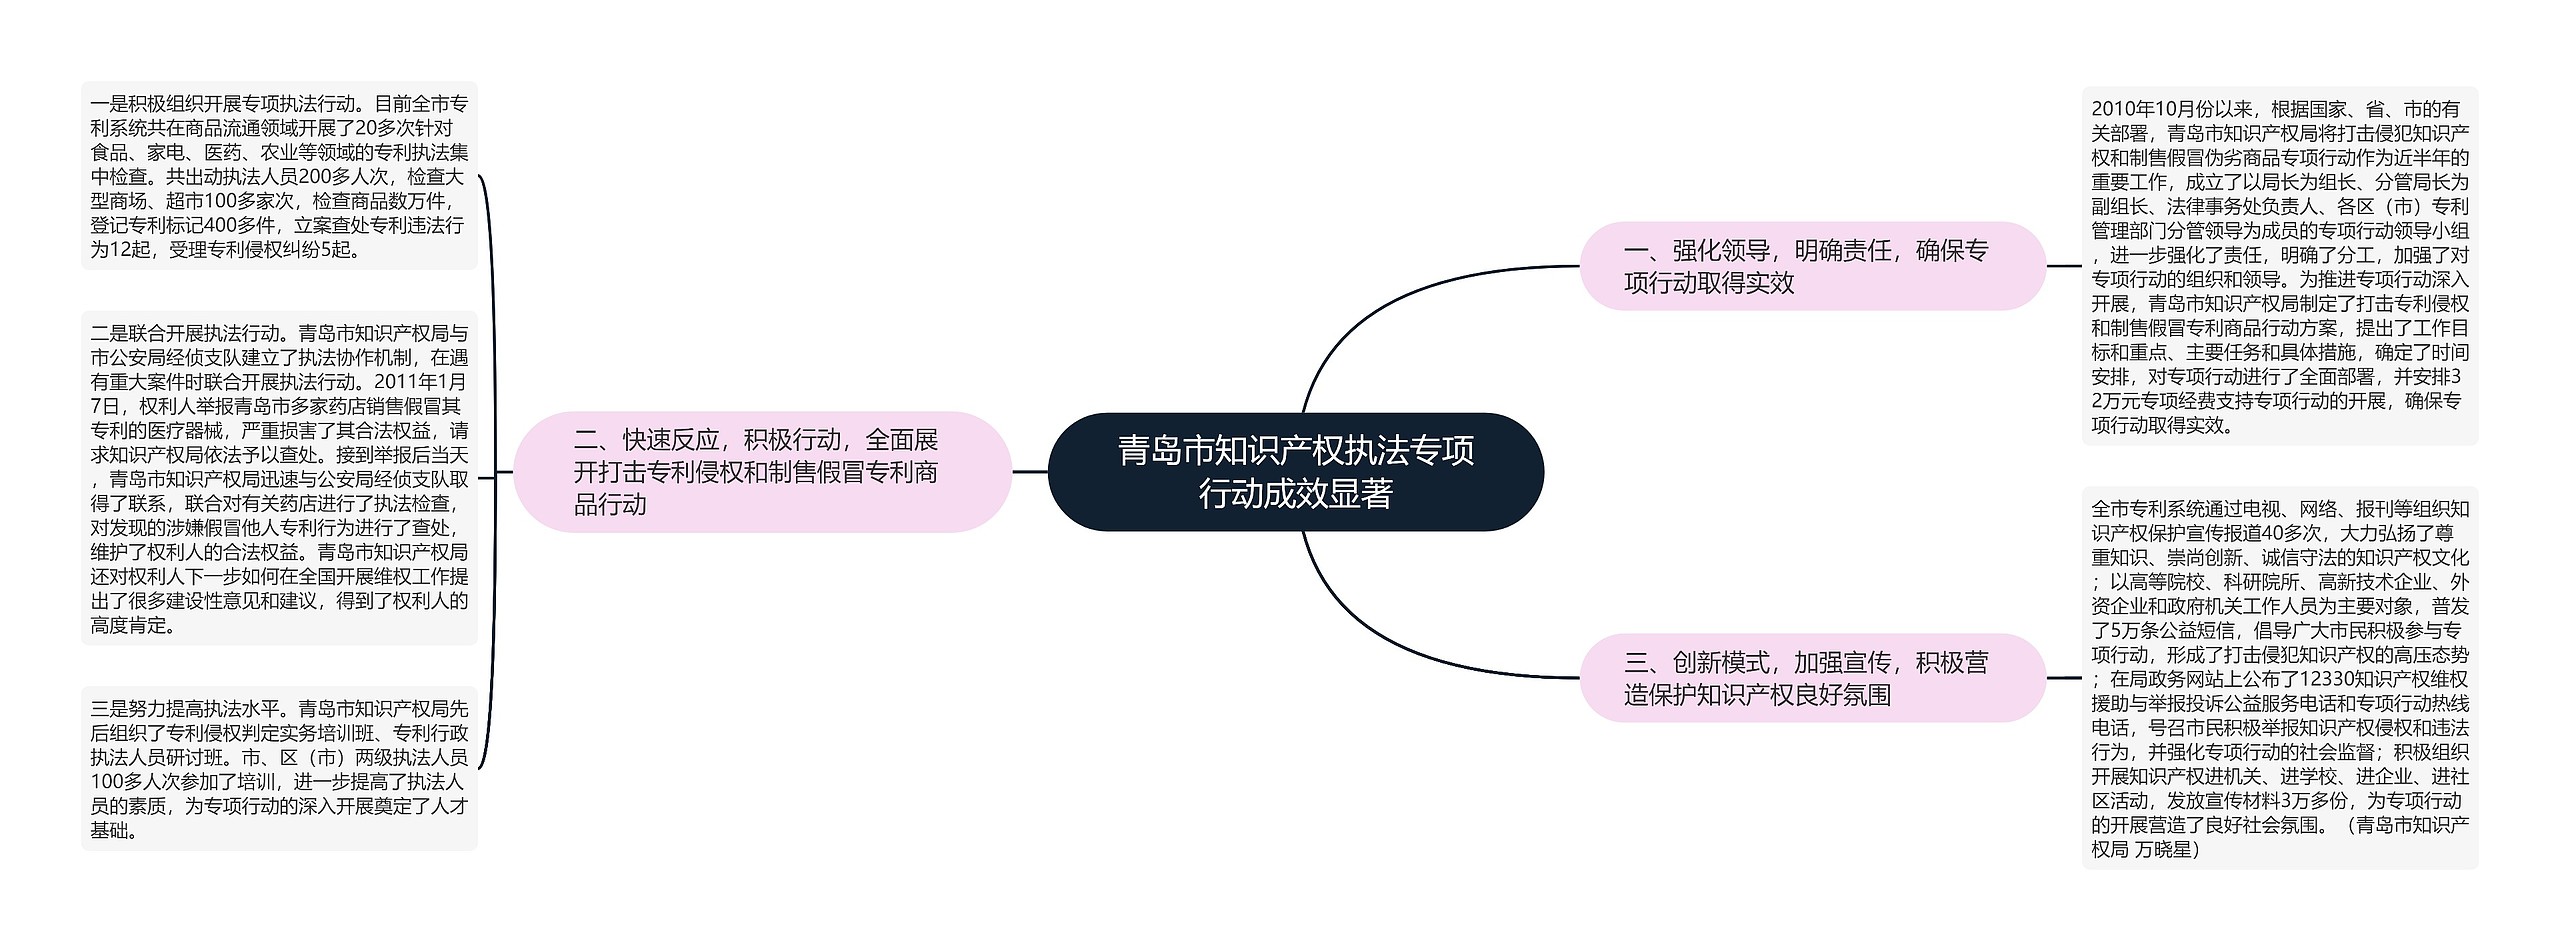 青岛市知识产权执法专项行动成效显著思维导图